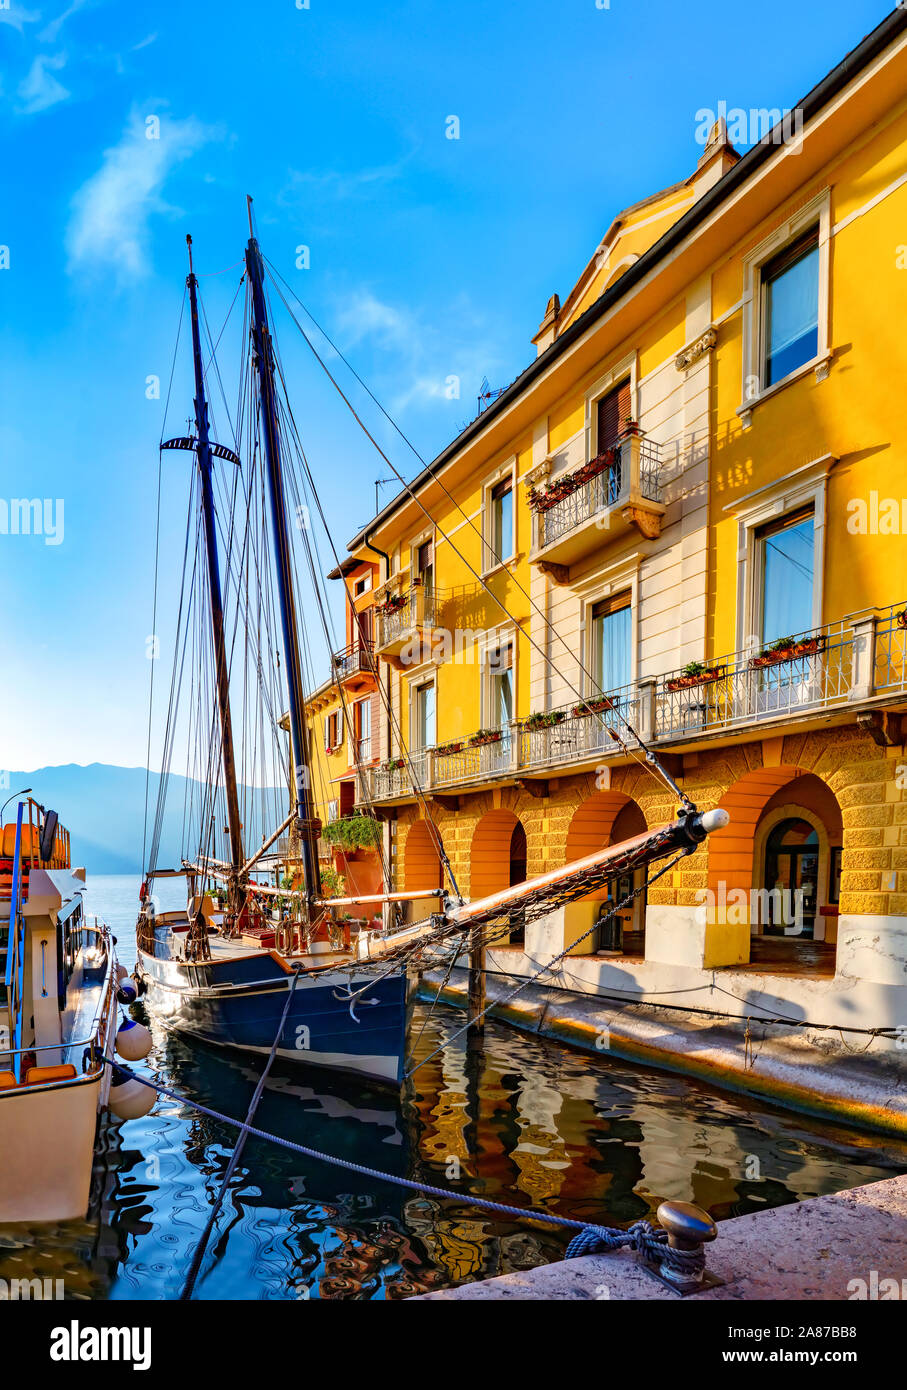 Blick auf einem alten Segelschiff in Malcesine am Gardasee in Norditalien. Malcesine ist ein beliebter Urlaubsort in Italien. Stockfoto